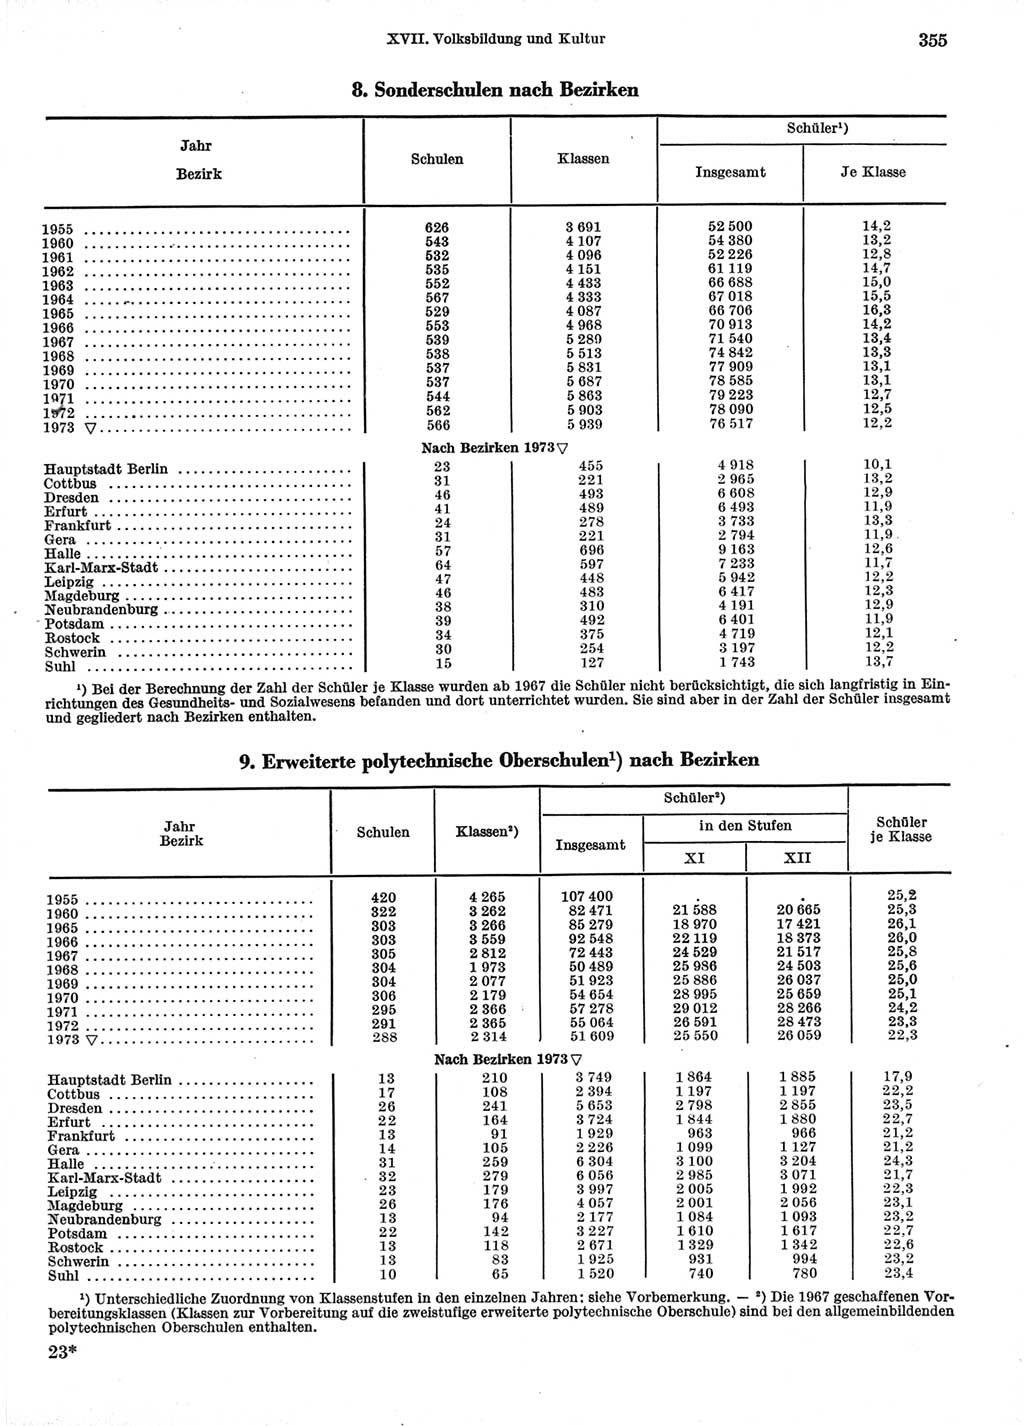 Statistisches Jahrbuch der Deutschen Demokratischen Republik (DDR) 1974, Seite 355 (Stat. Jb. DDR 1974, S. 355)